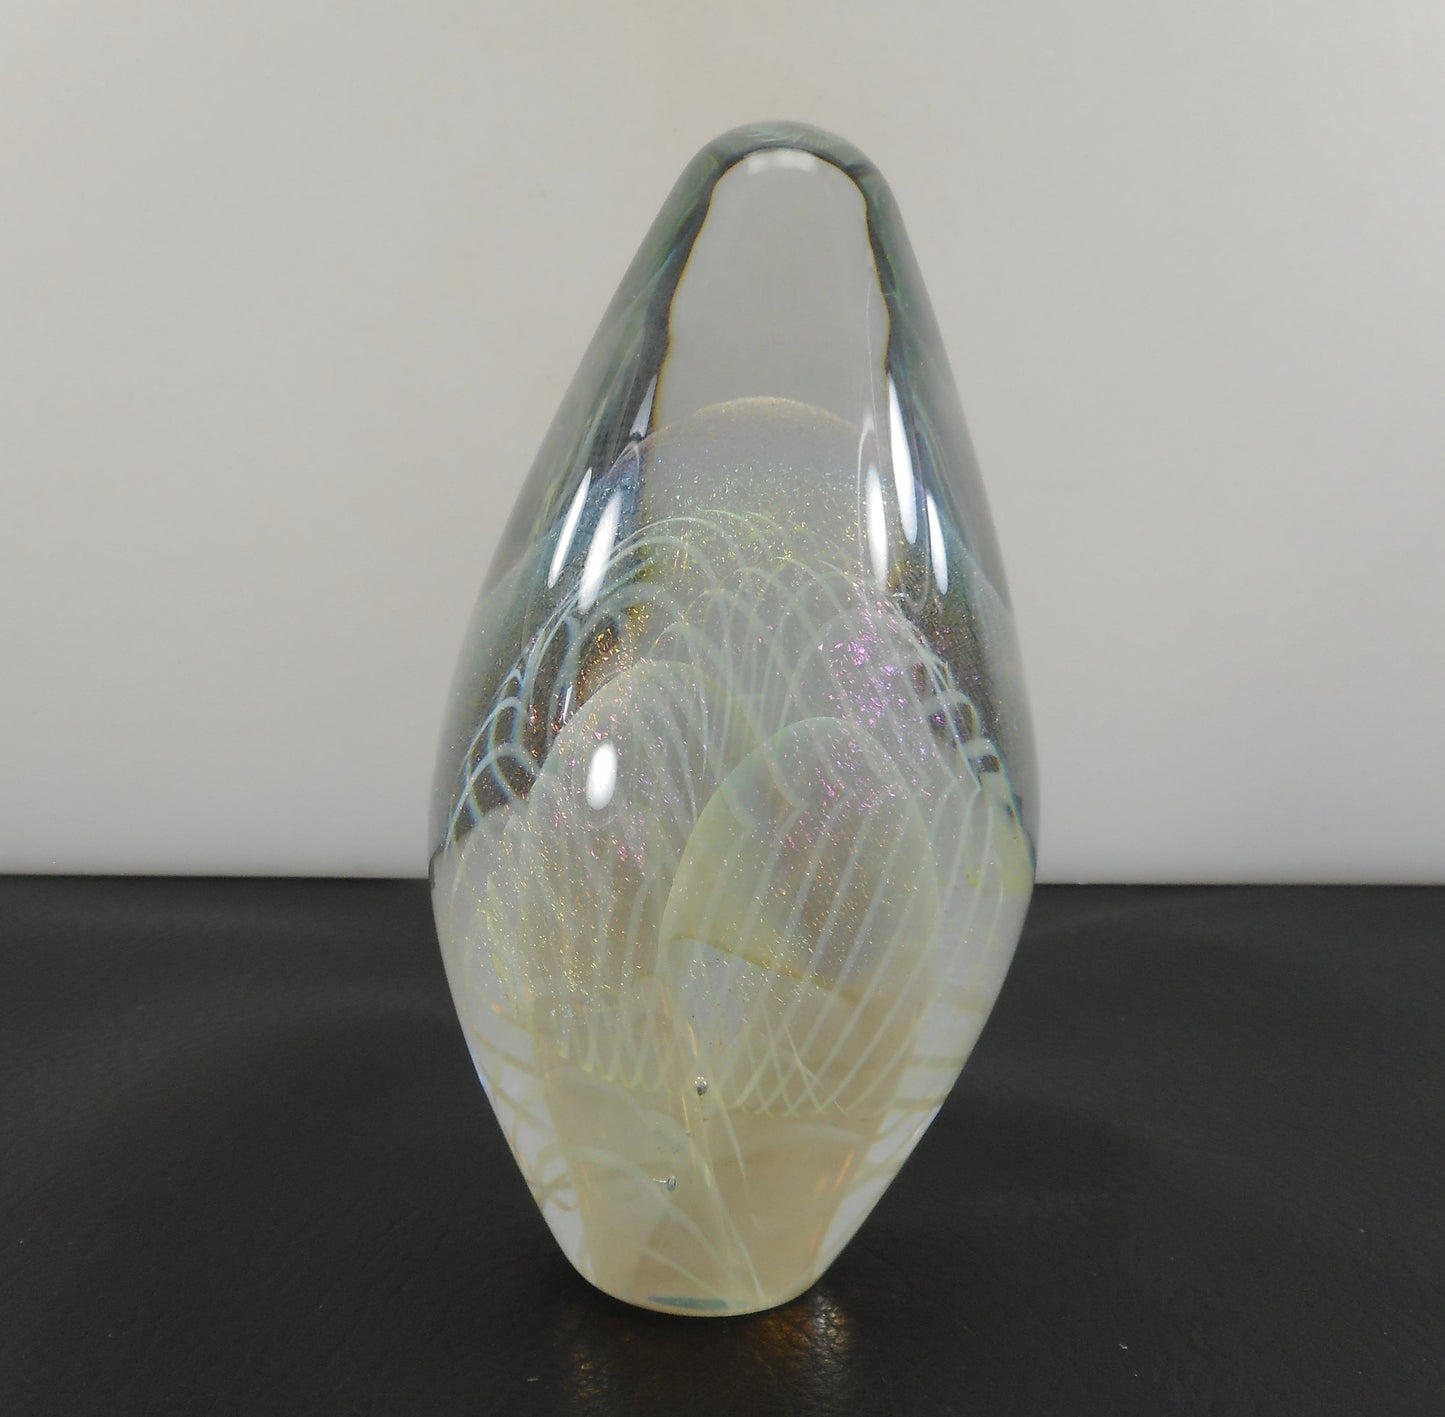 Robert Eickholt Signed 1995 Iridescent Art Glass Egg Pointed Paperweight Studio